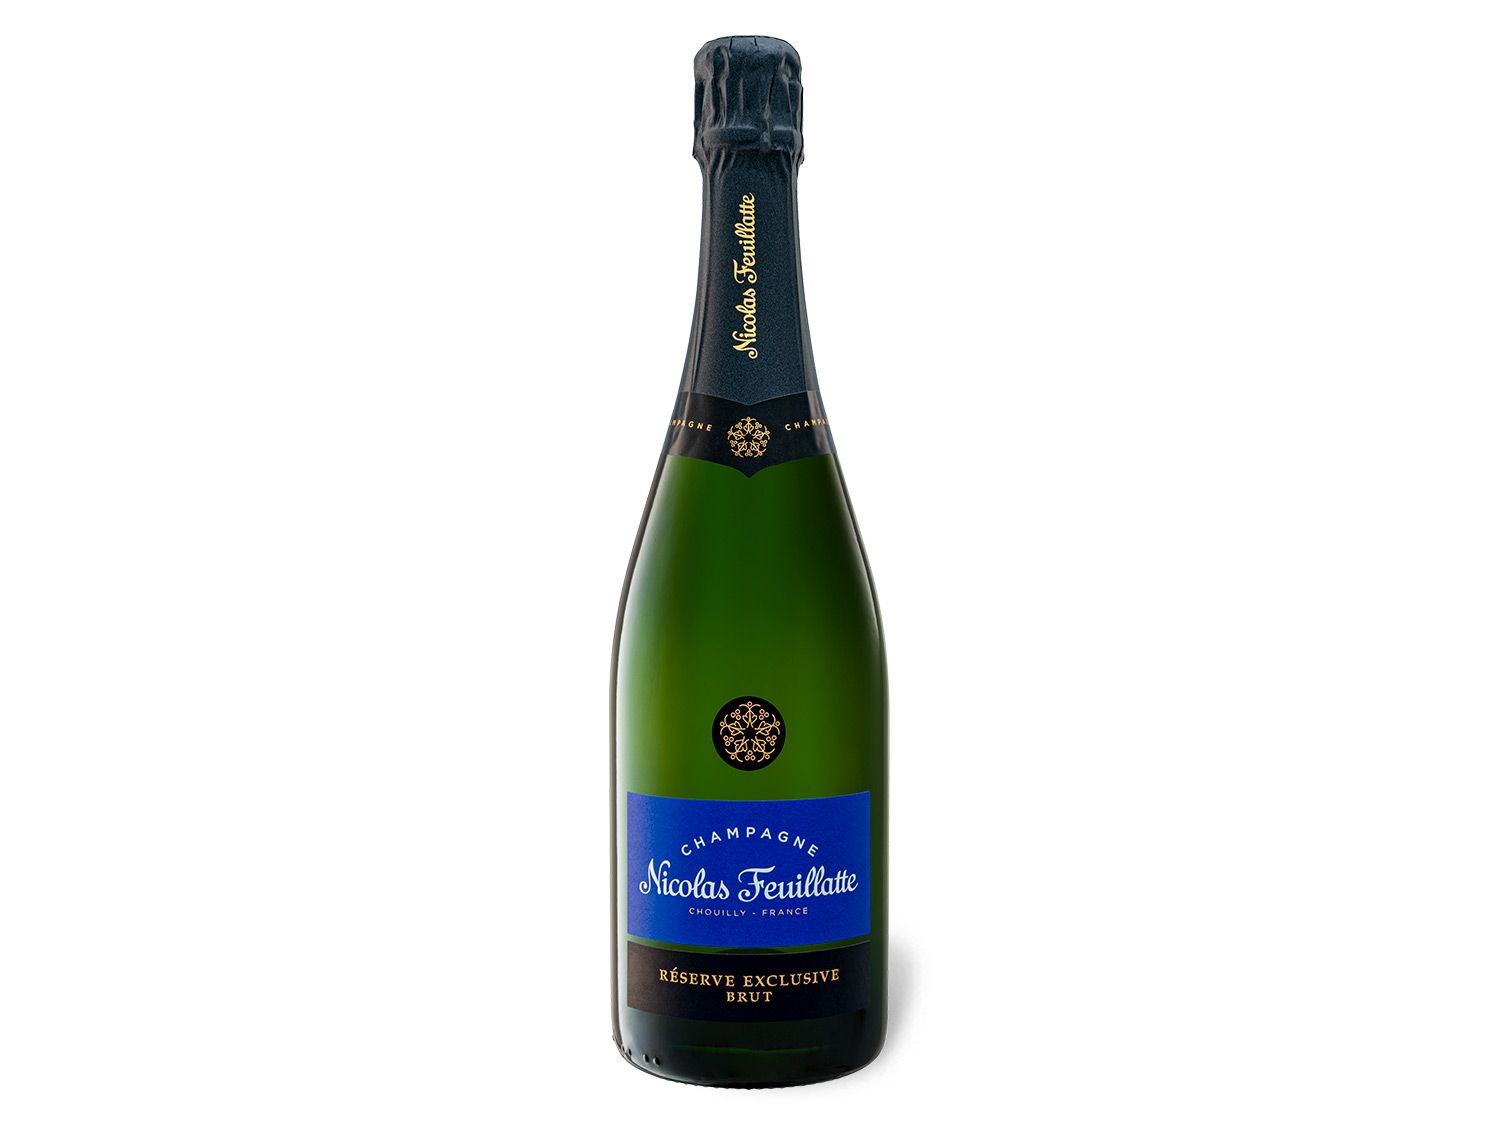 Nicolas Feuillatte Réserve Exclusive brut, Champagner